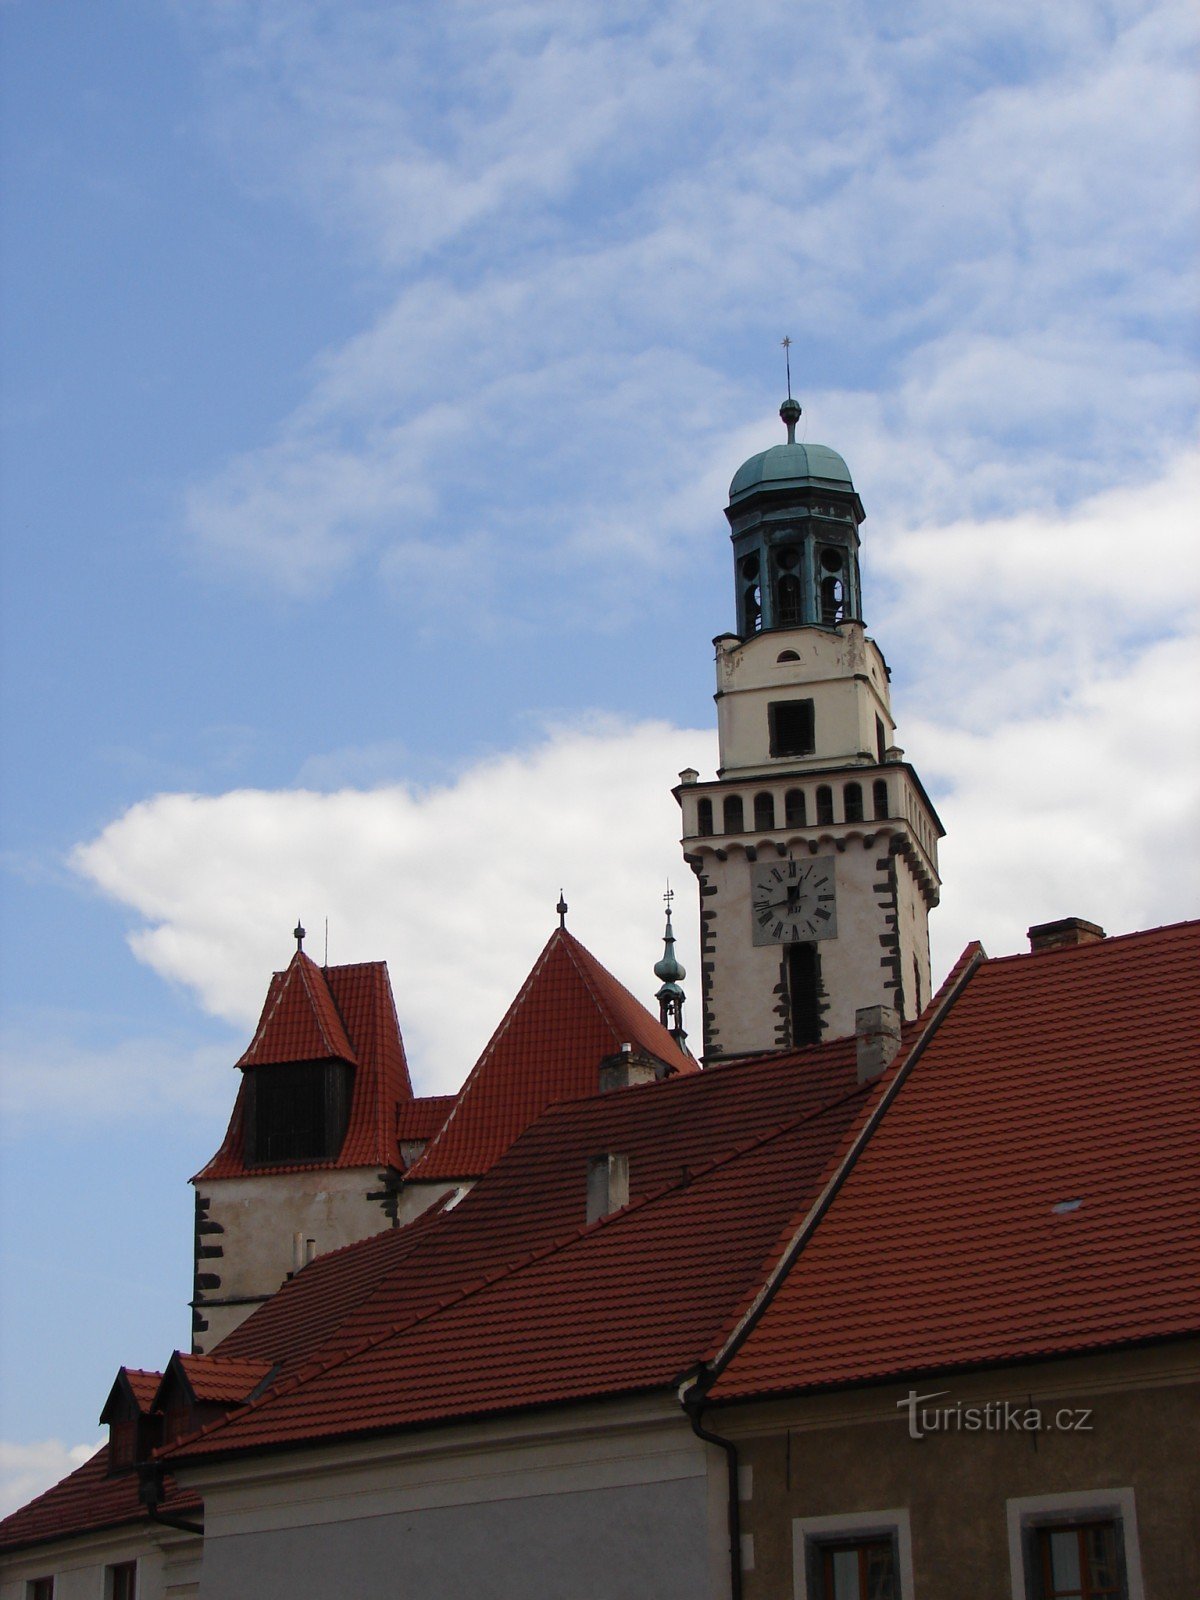 Bezoek de kerk van St. Jakub in Prachatice, waar de patroonheilige van kooplieden en pelgrims